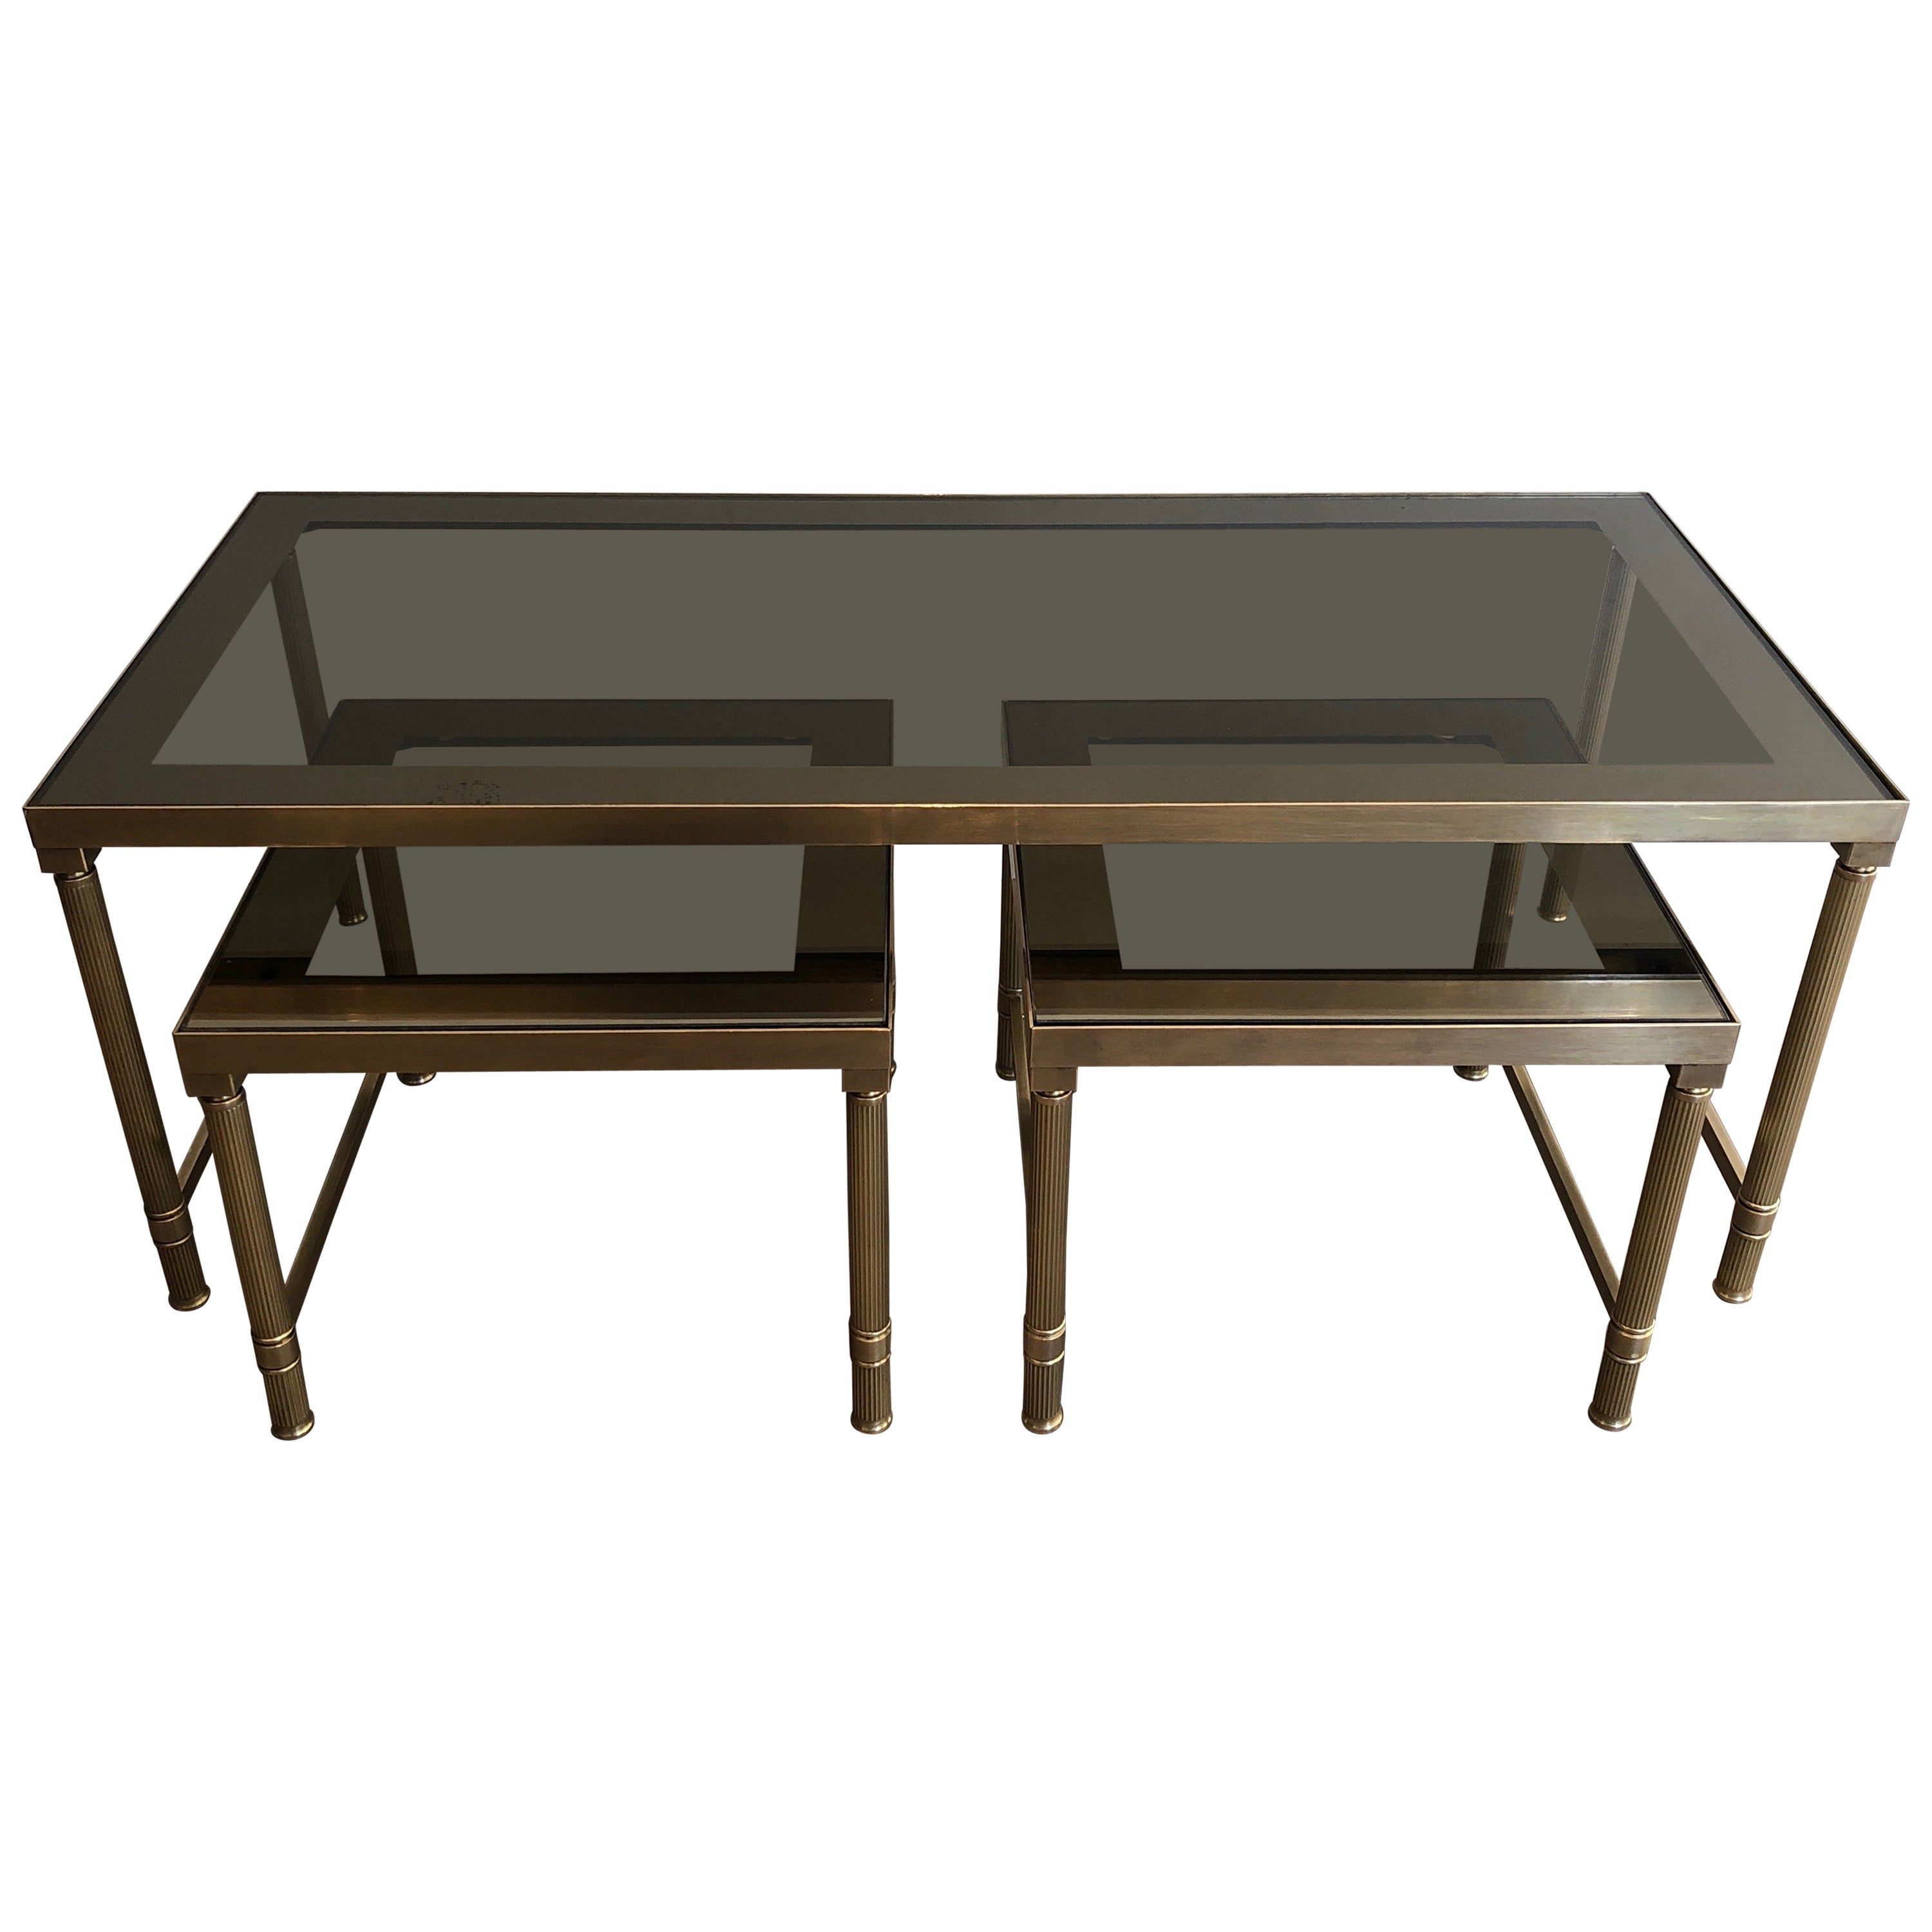 Table basse en laiton avec 2 tables gigognes qui peuvent être utilisées comme tables d'appoint